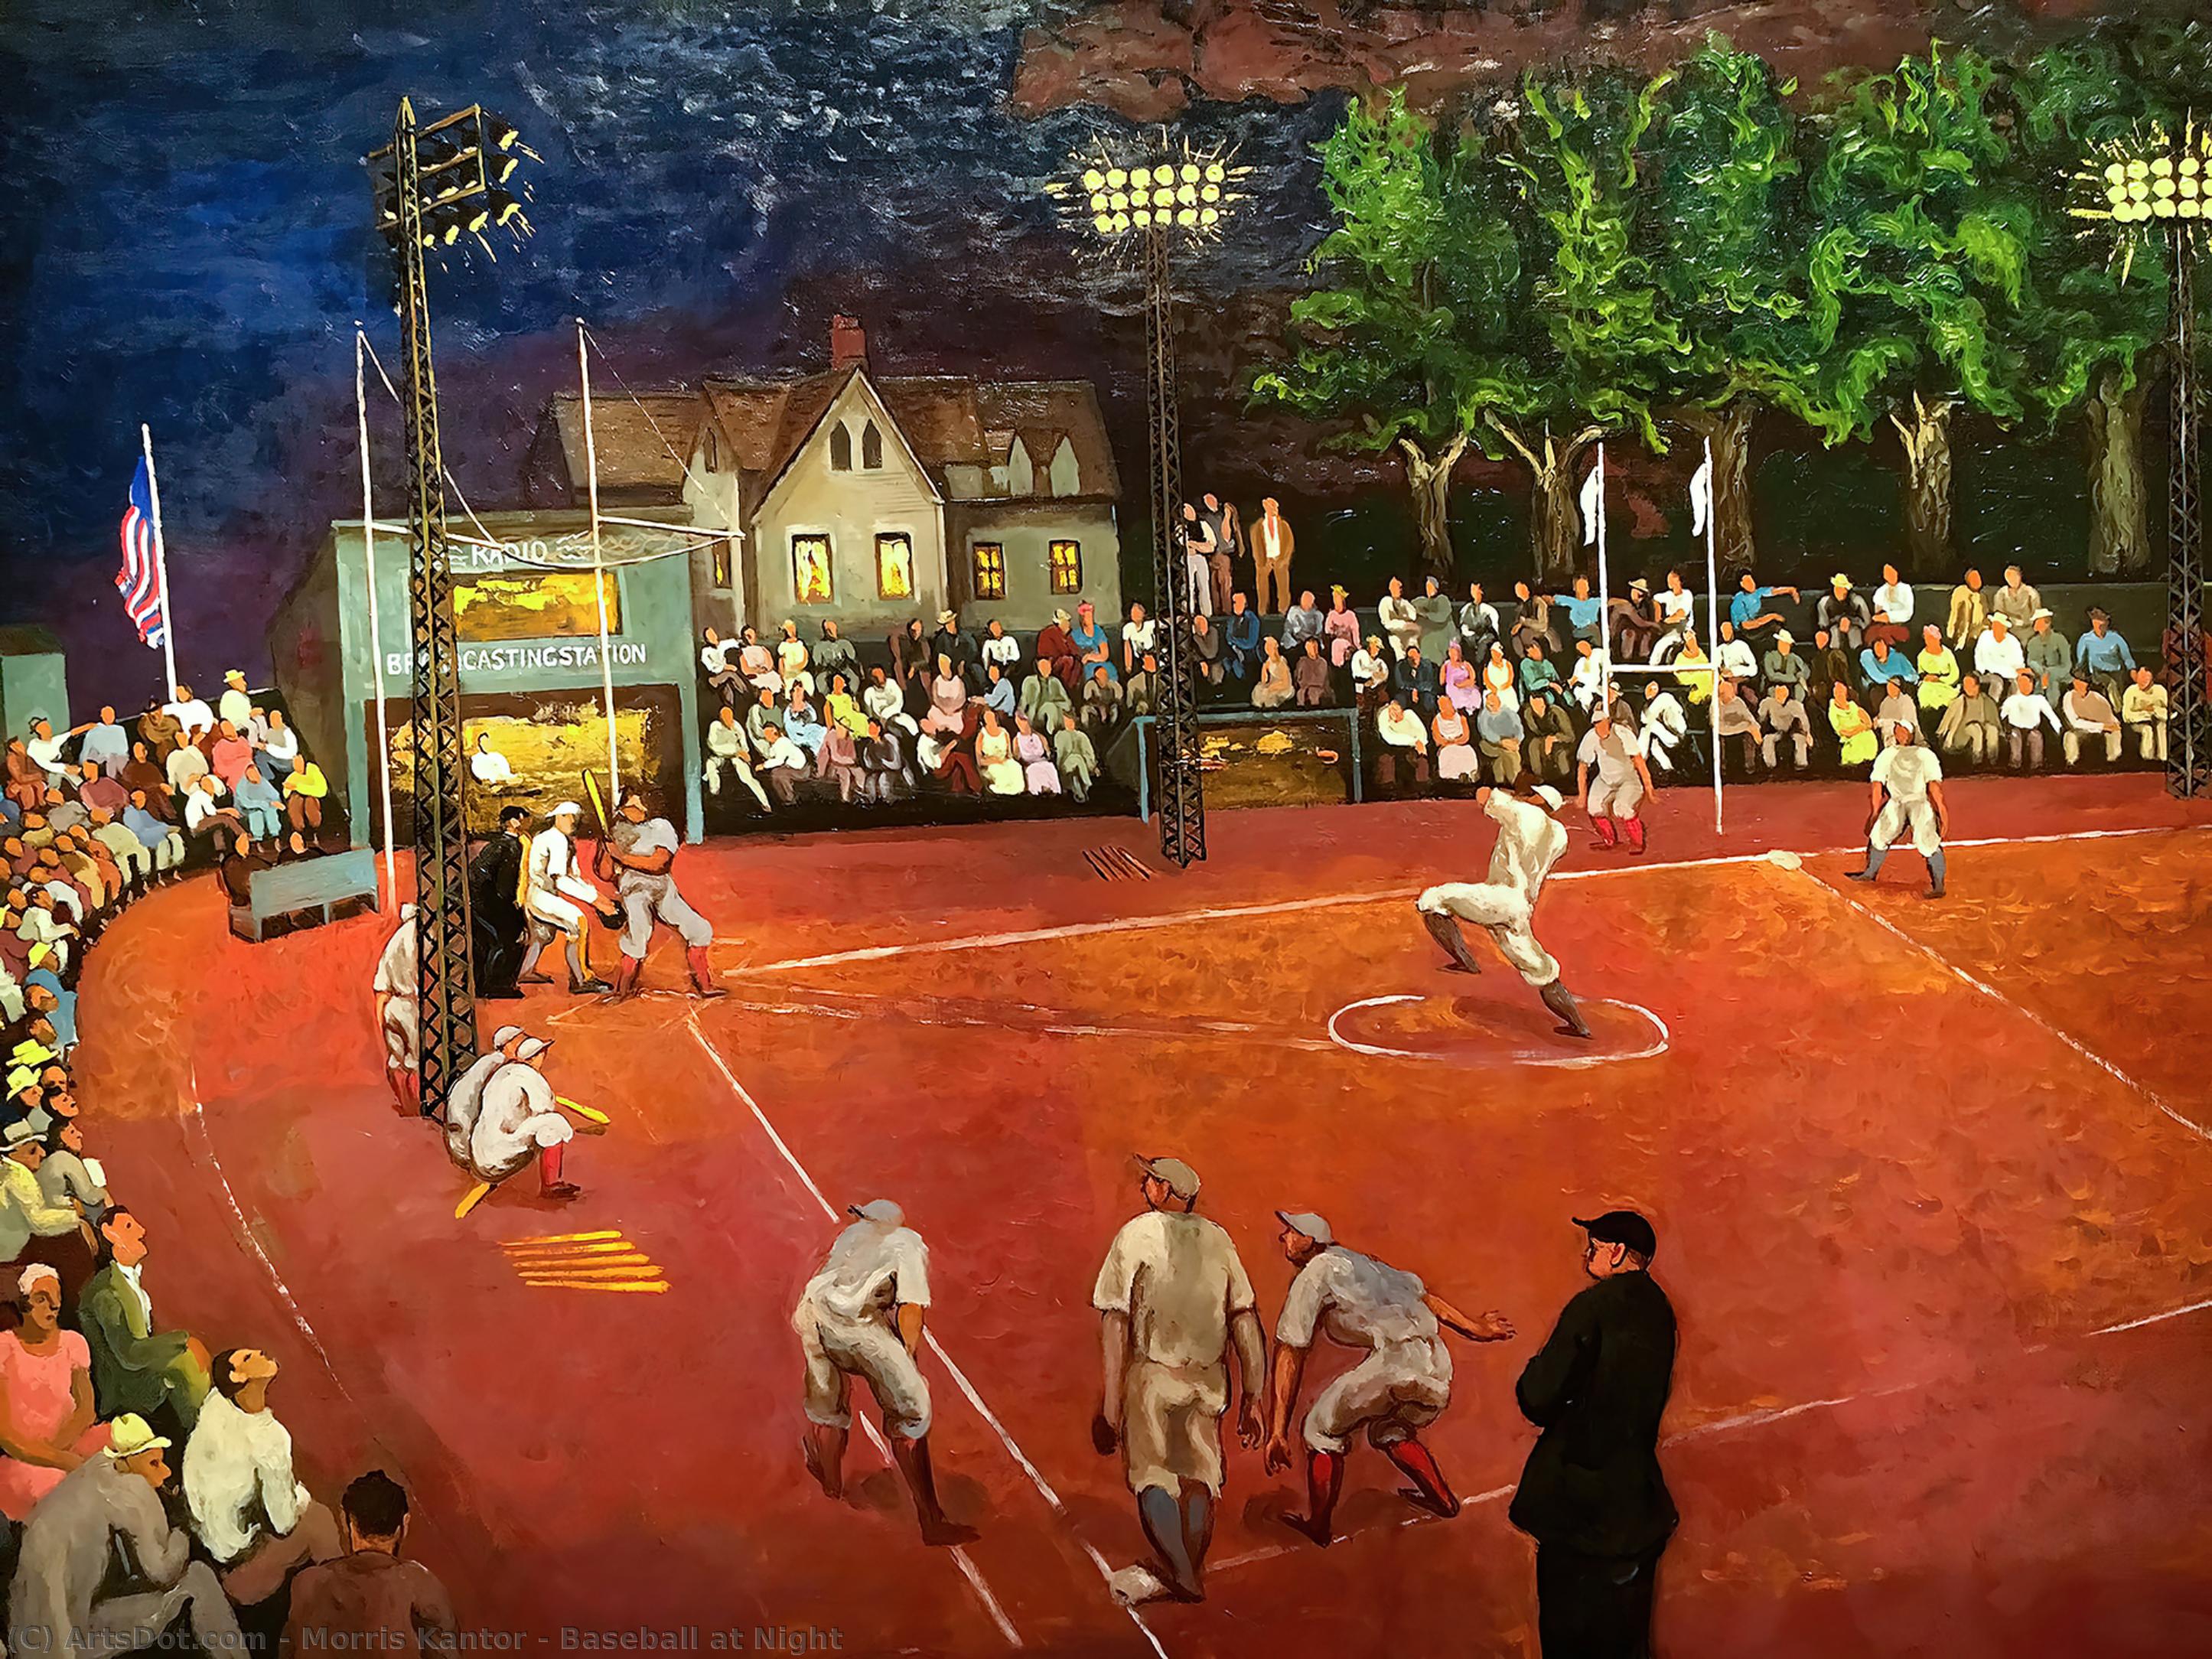 Compre Museu De Reproduções De Arte Baseball at Night, 1934 por Morris Kantor (Inspirado por) (1896-1974) | ArtsDot.com